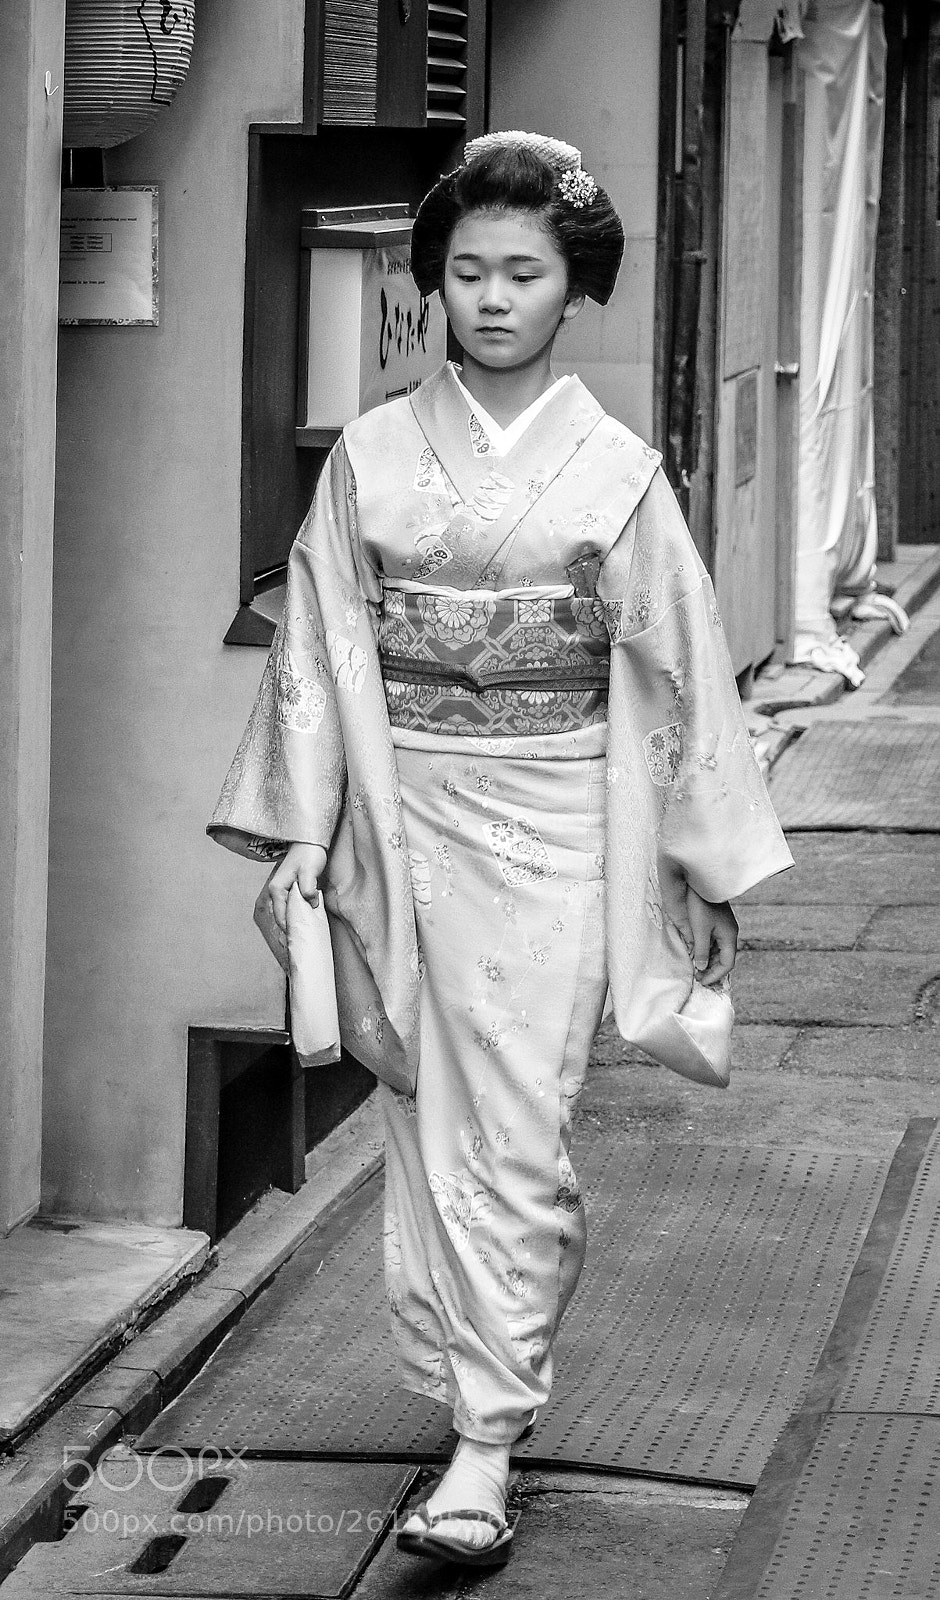 Canon EOS 77D (EOS 9000D / EOS 770D) sample photo. A real geisha in photography